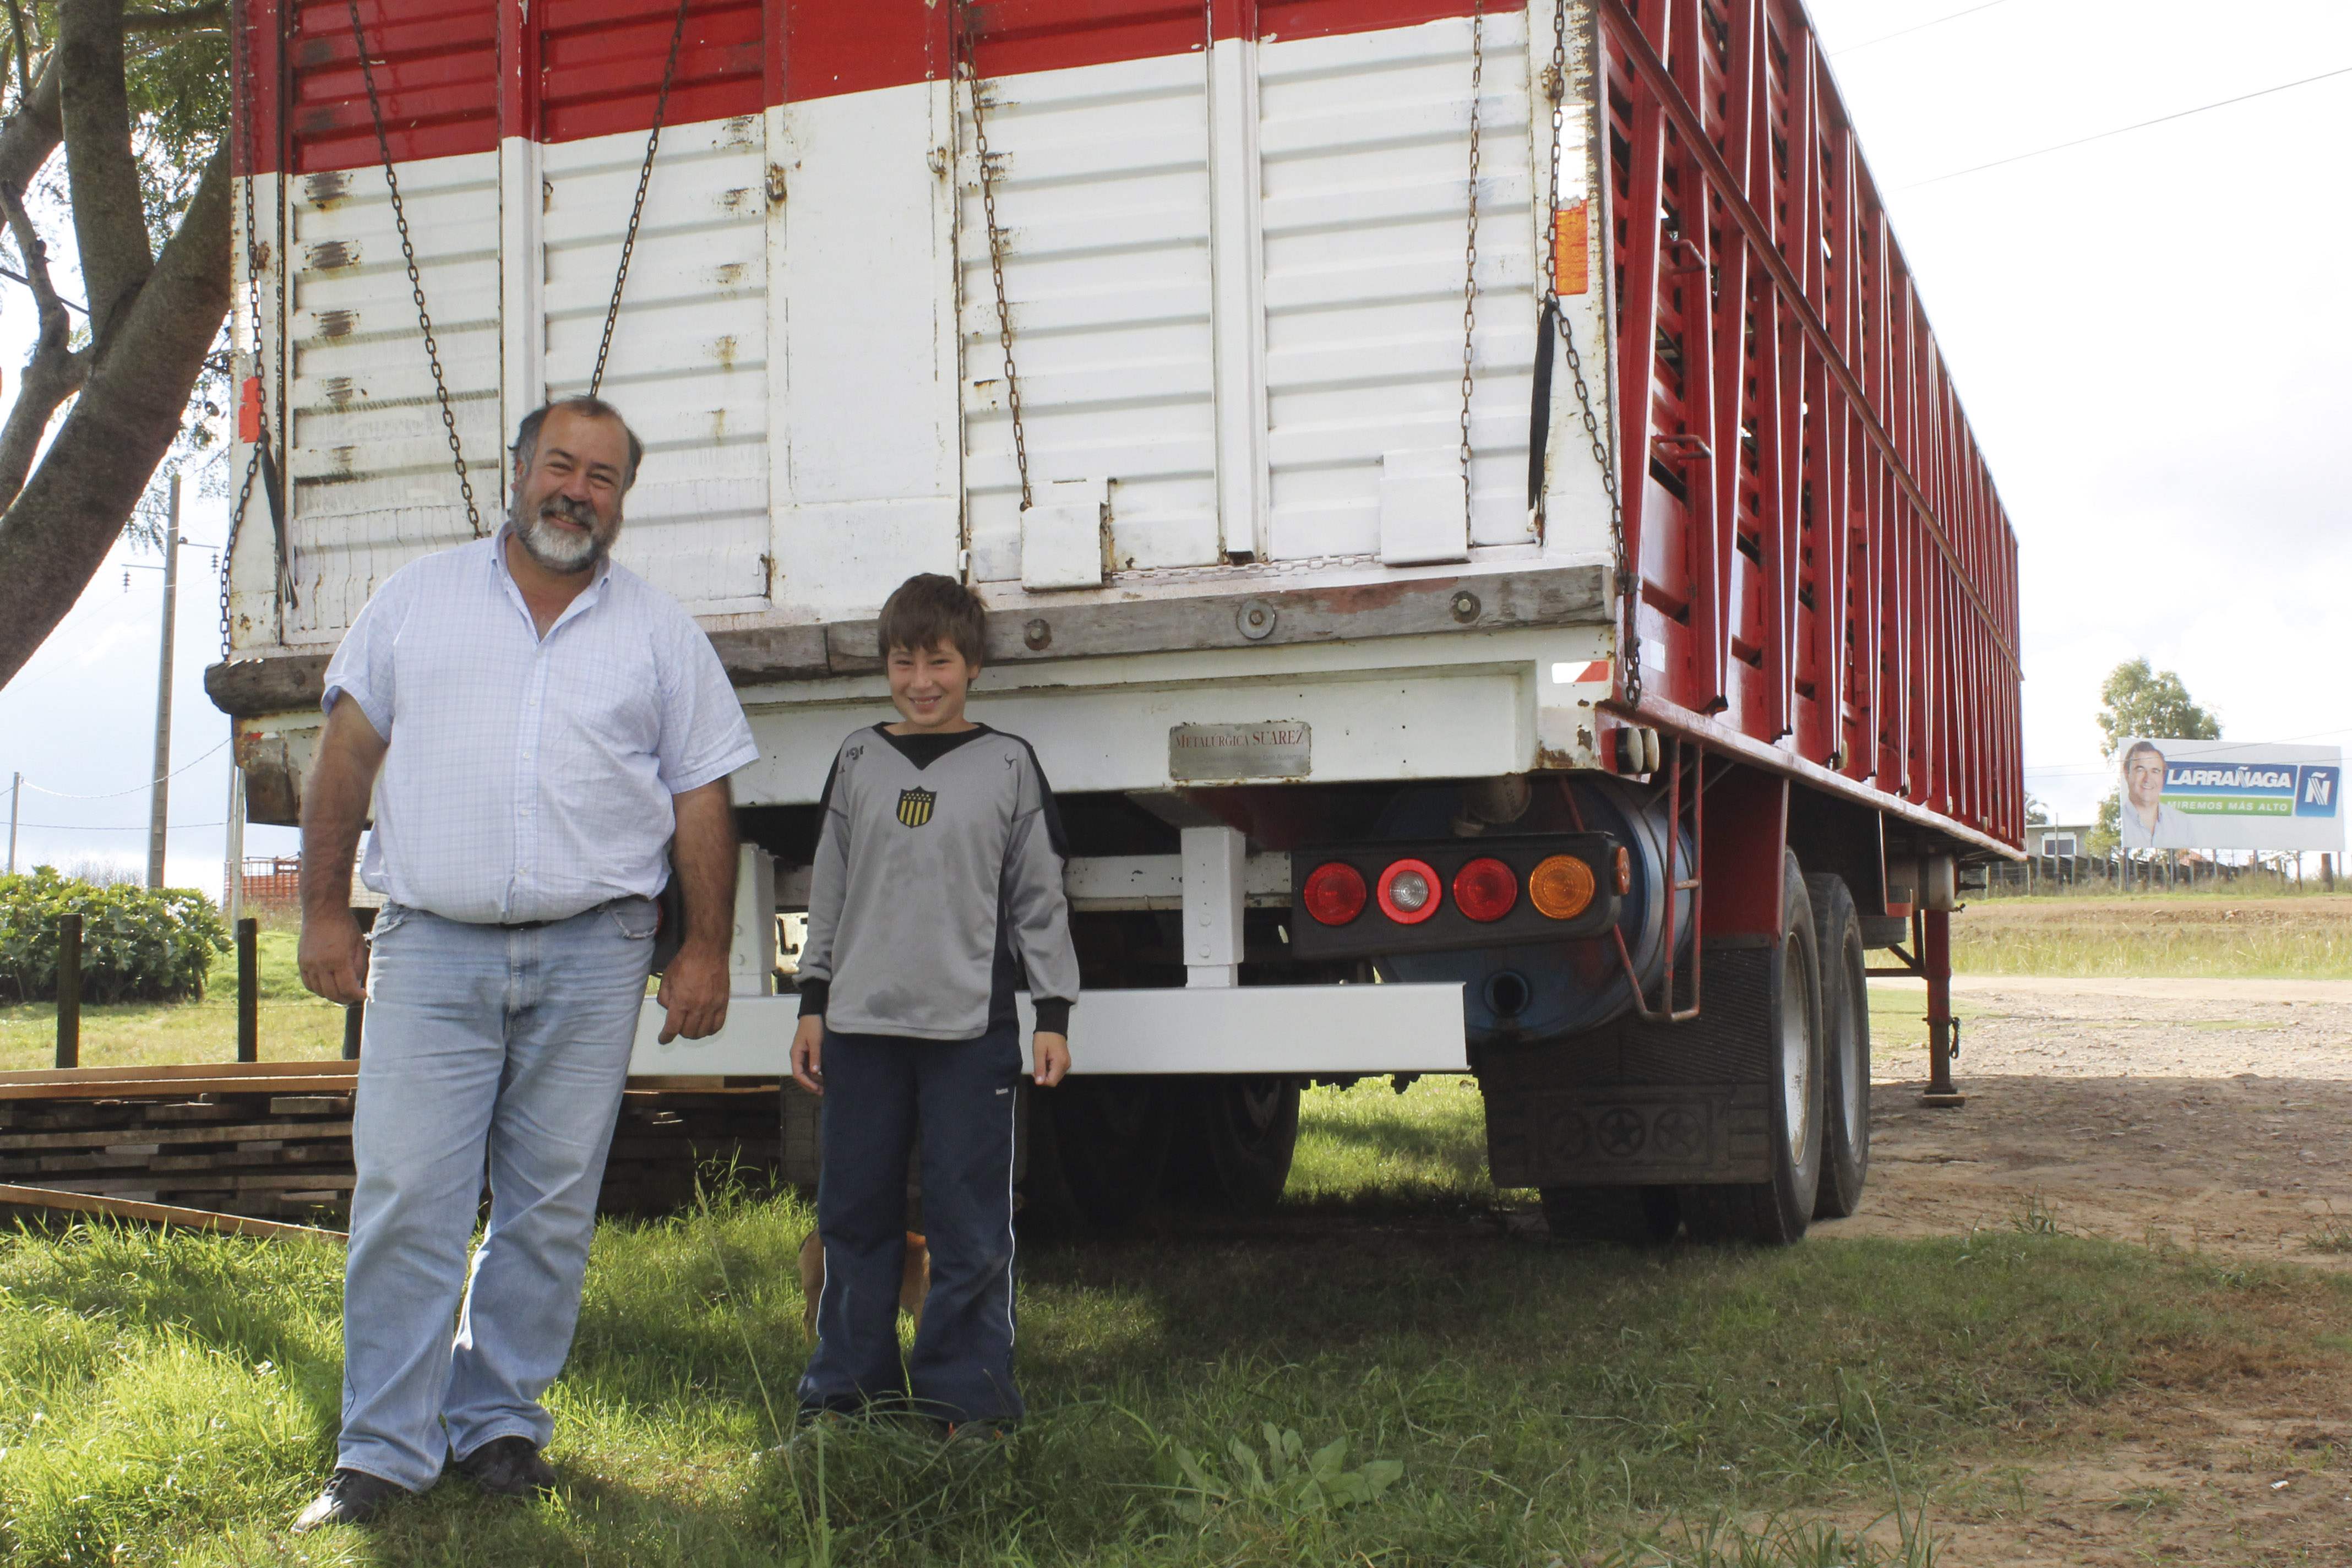 José Dos Anjos: “Yo me crié andando gratis en los camiones para aprender”